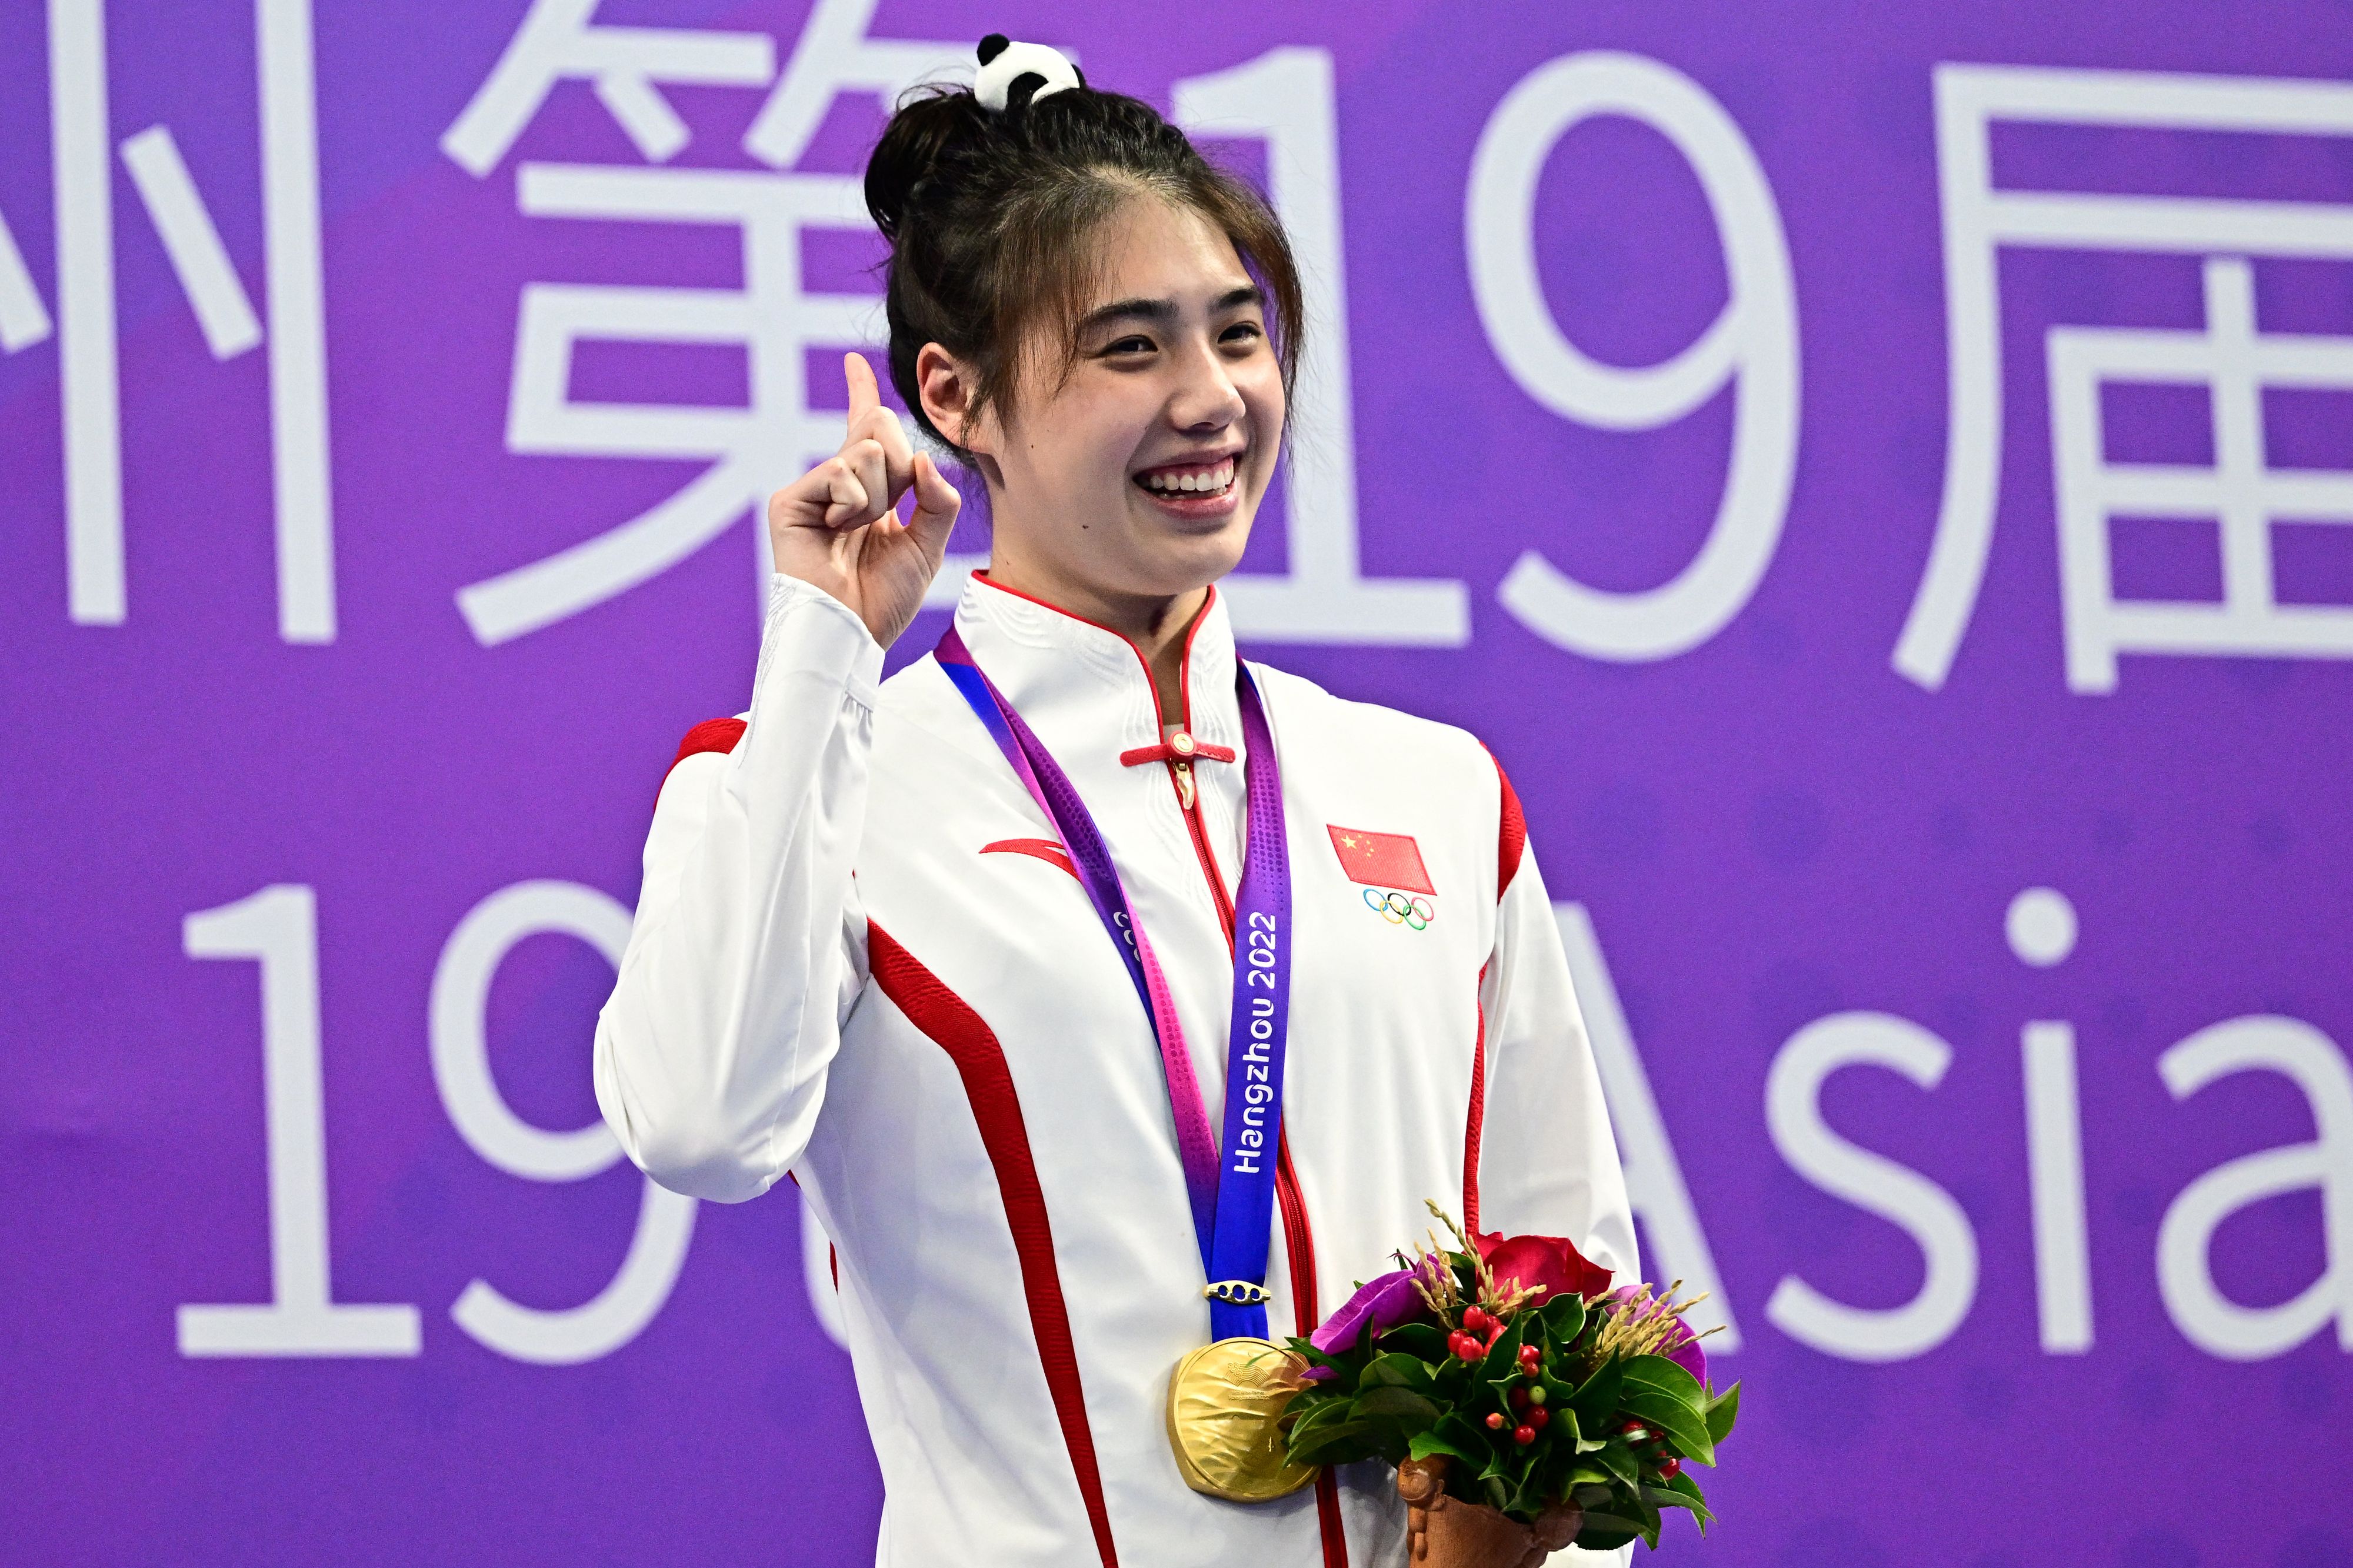 La Chine sélectionne 11 nageurs liés à une affaire de dopage